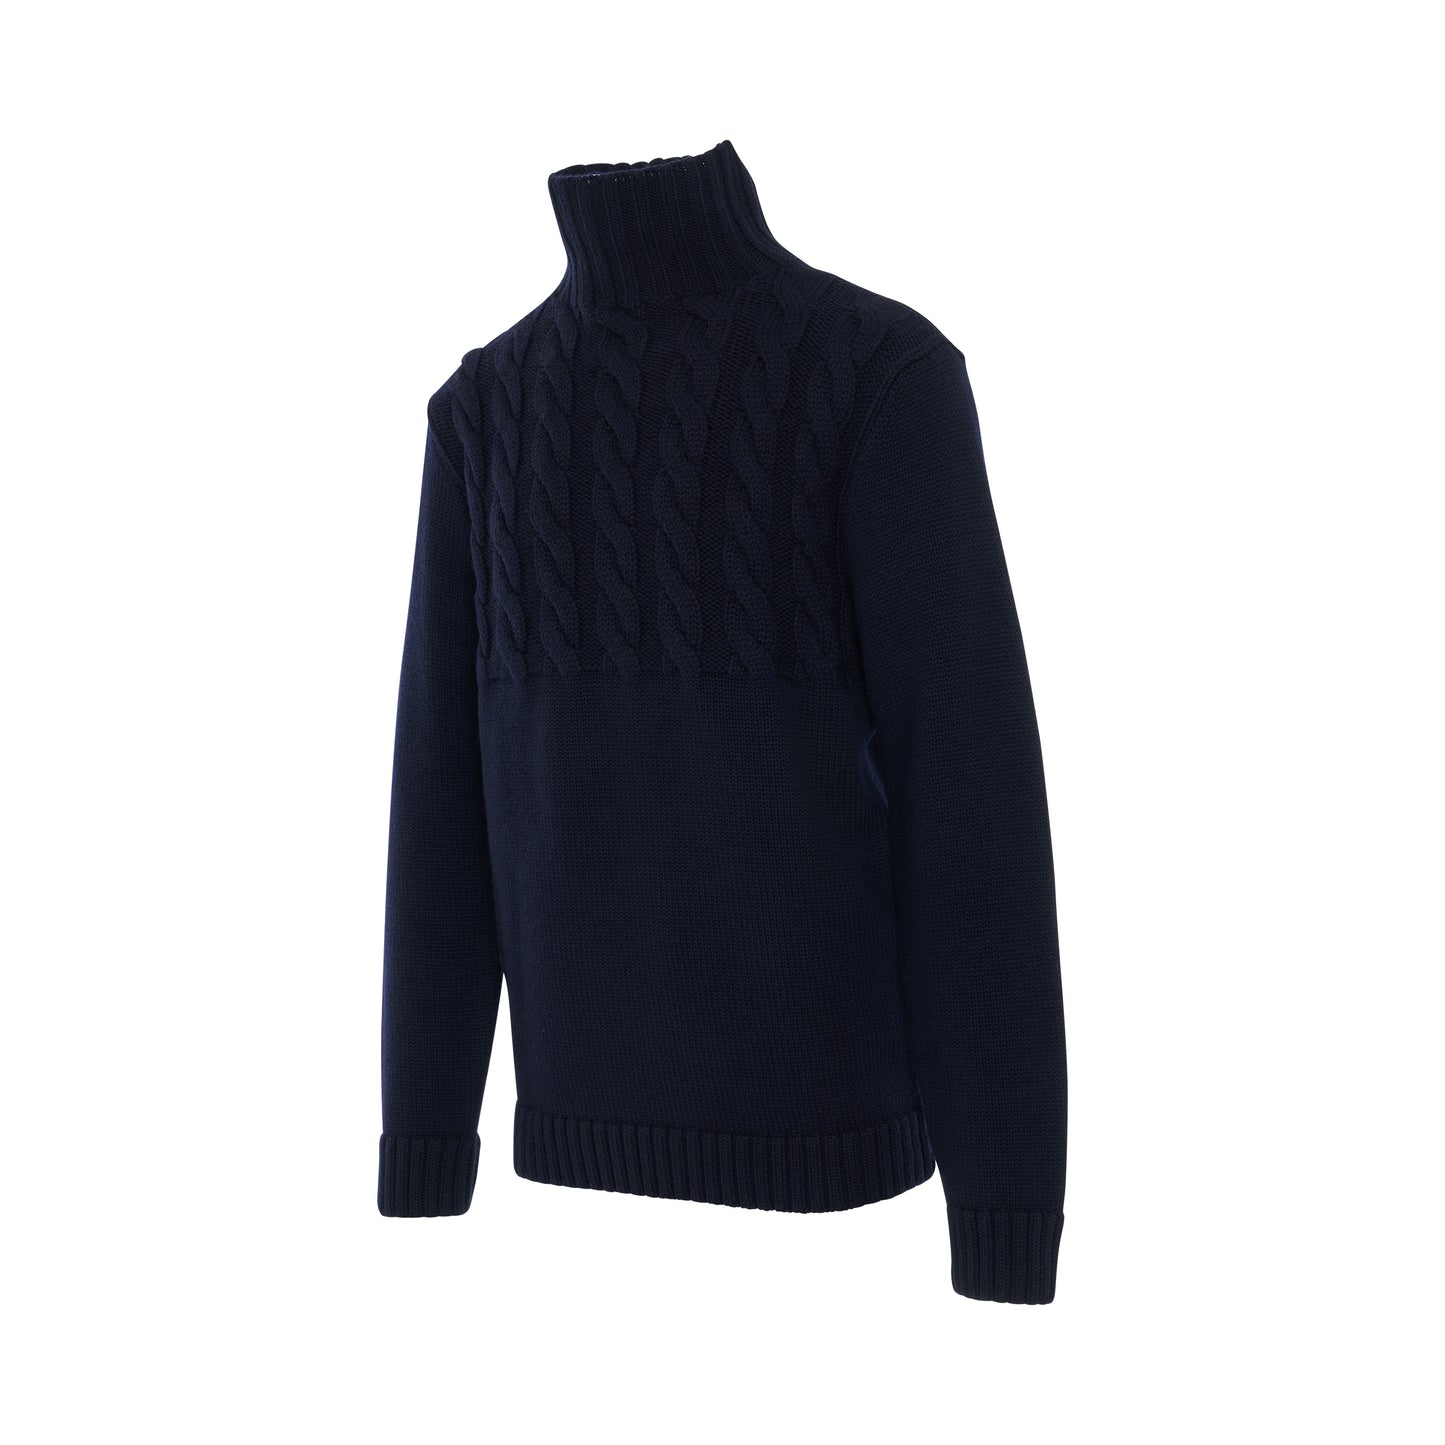 Knit Long Sleeve Turtleneck Sweater in Navy